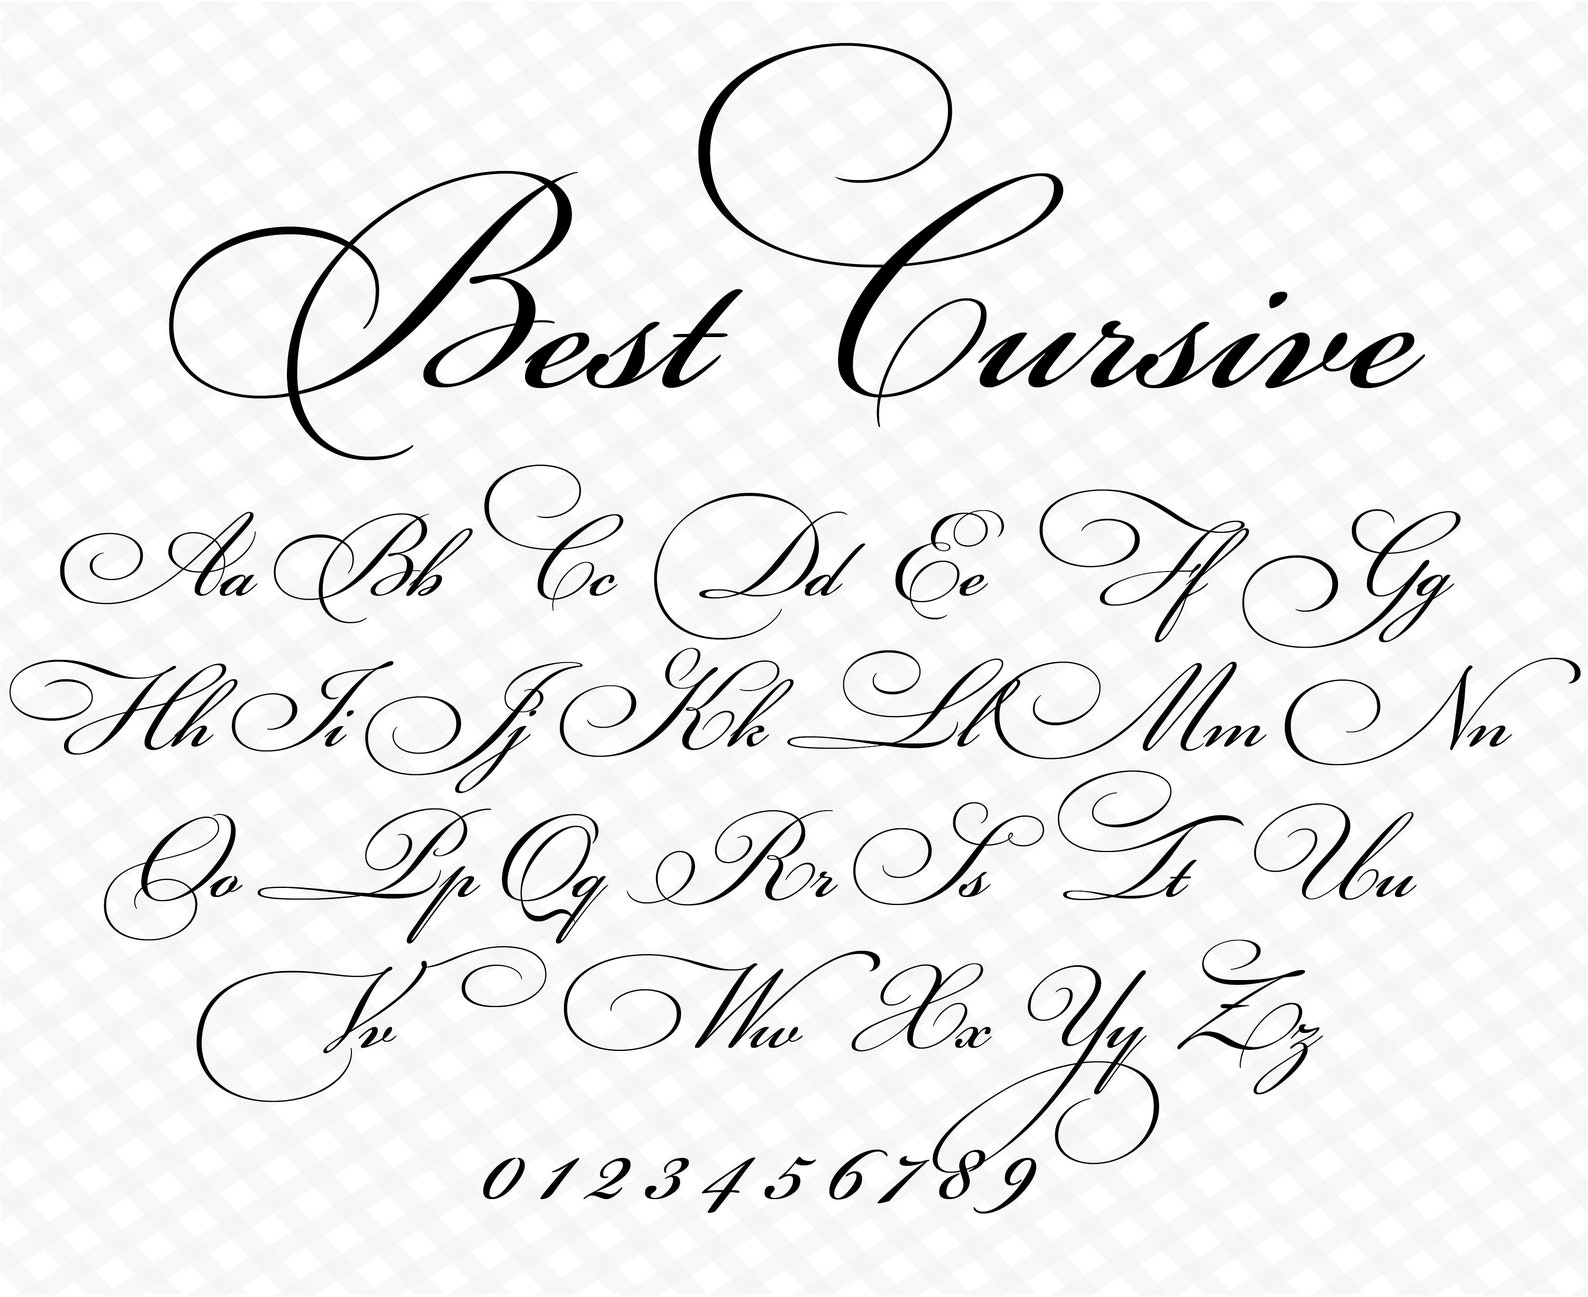 Wedding Font Cursive Font Wedding Script Wedding Cursive Font - Etsy